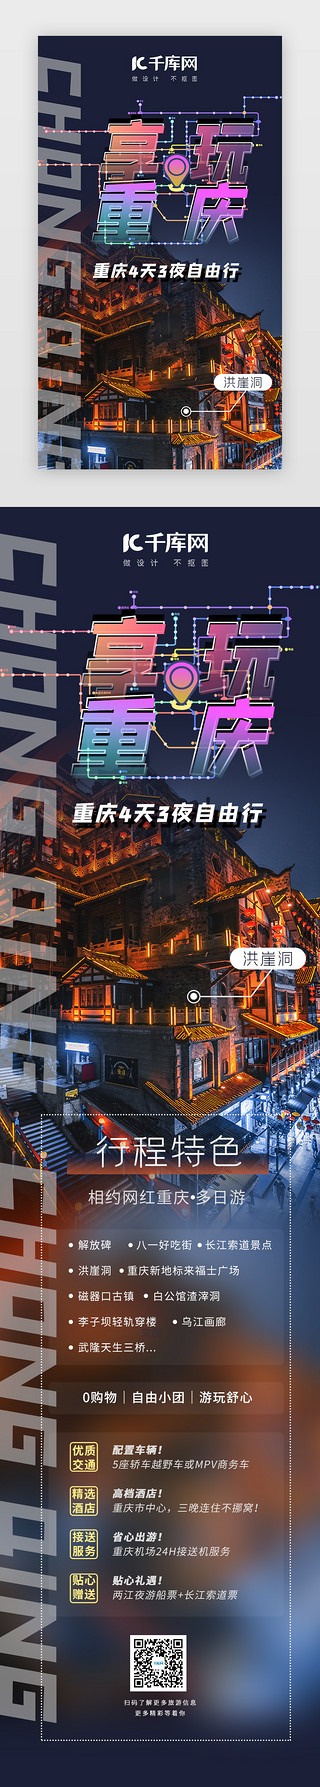 介绍旅游景点UI设计素材_享玩重庆旅游